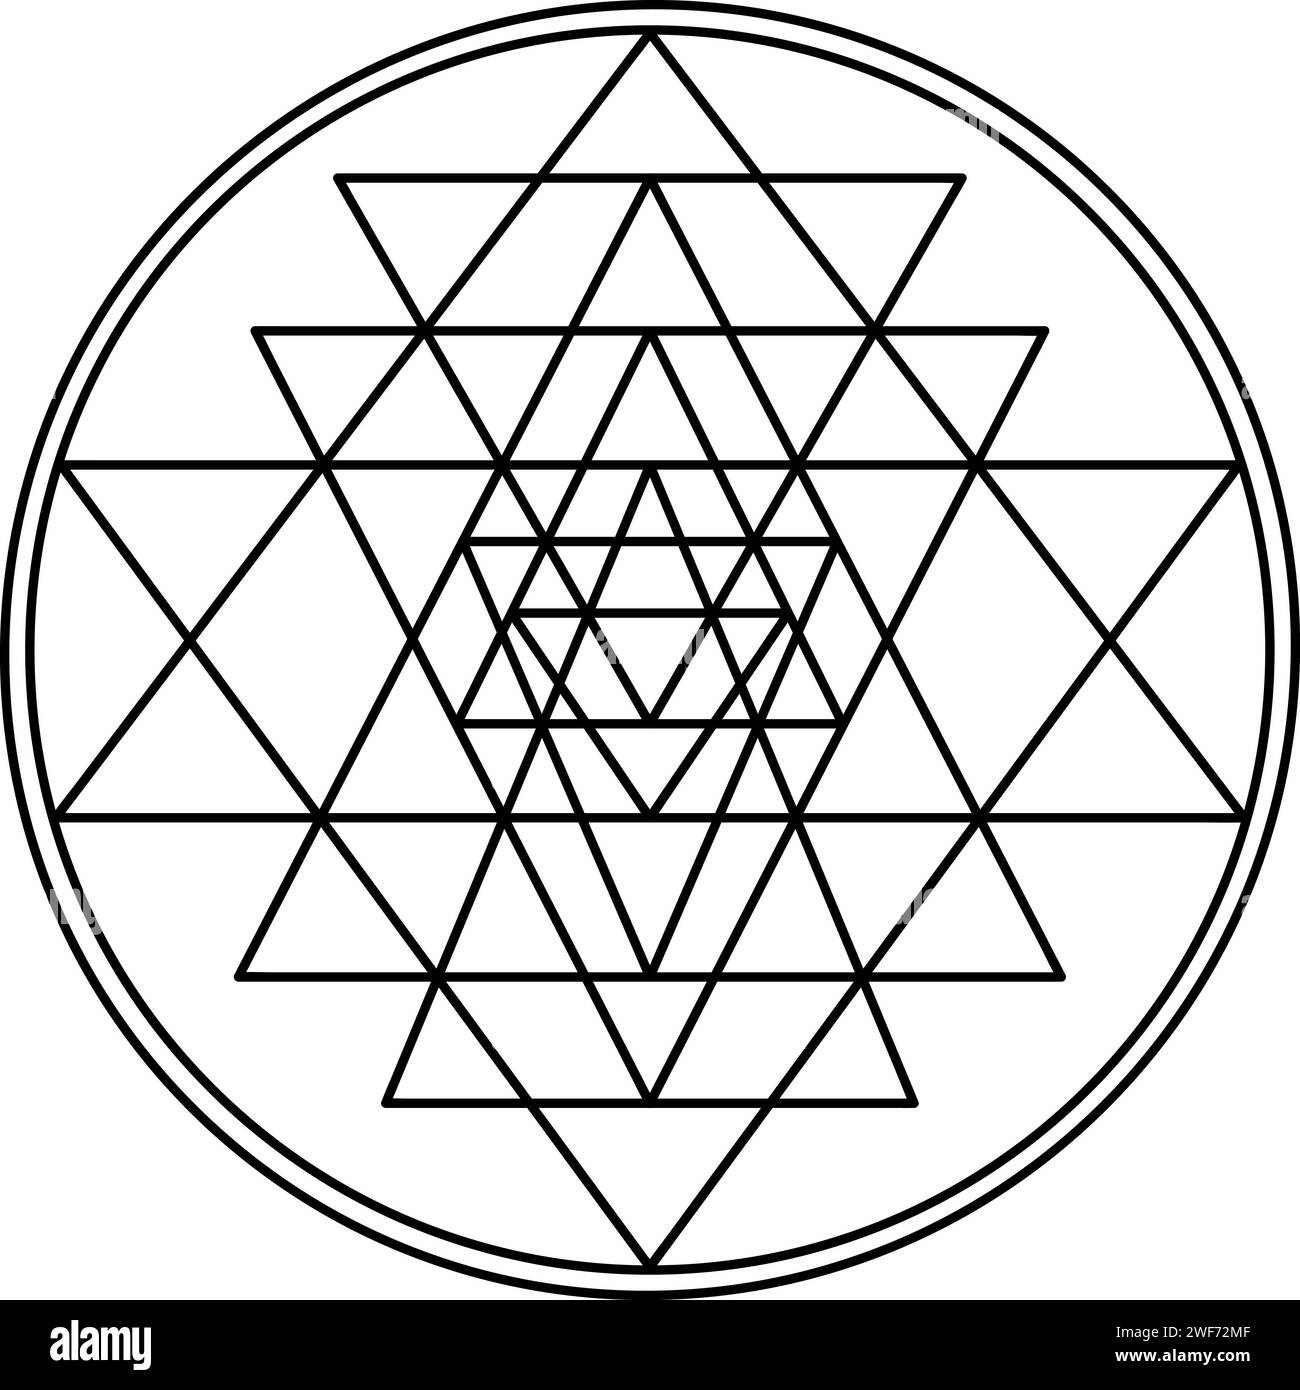 sri yantra symbol isolated on white background sacred geometry symbol concept 2WF72MF